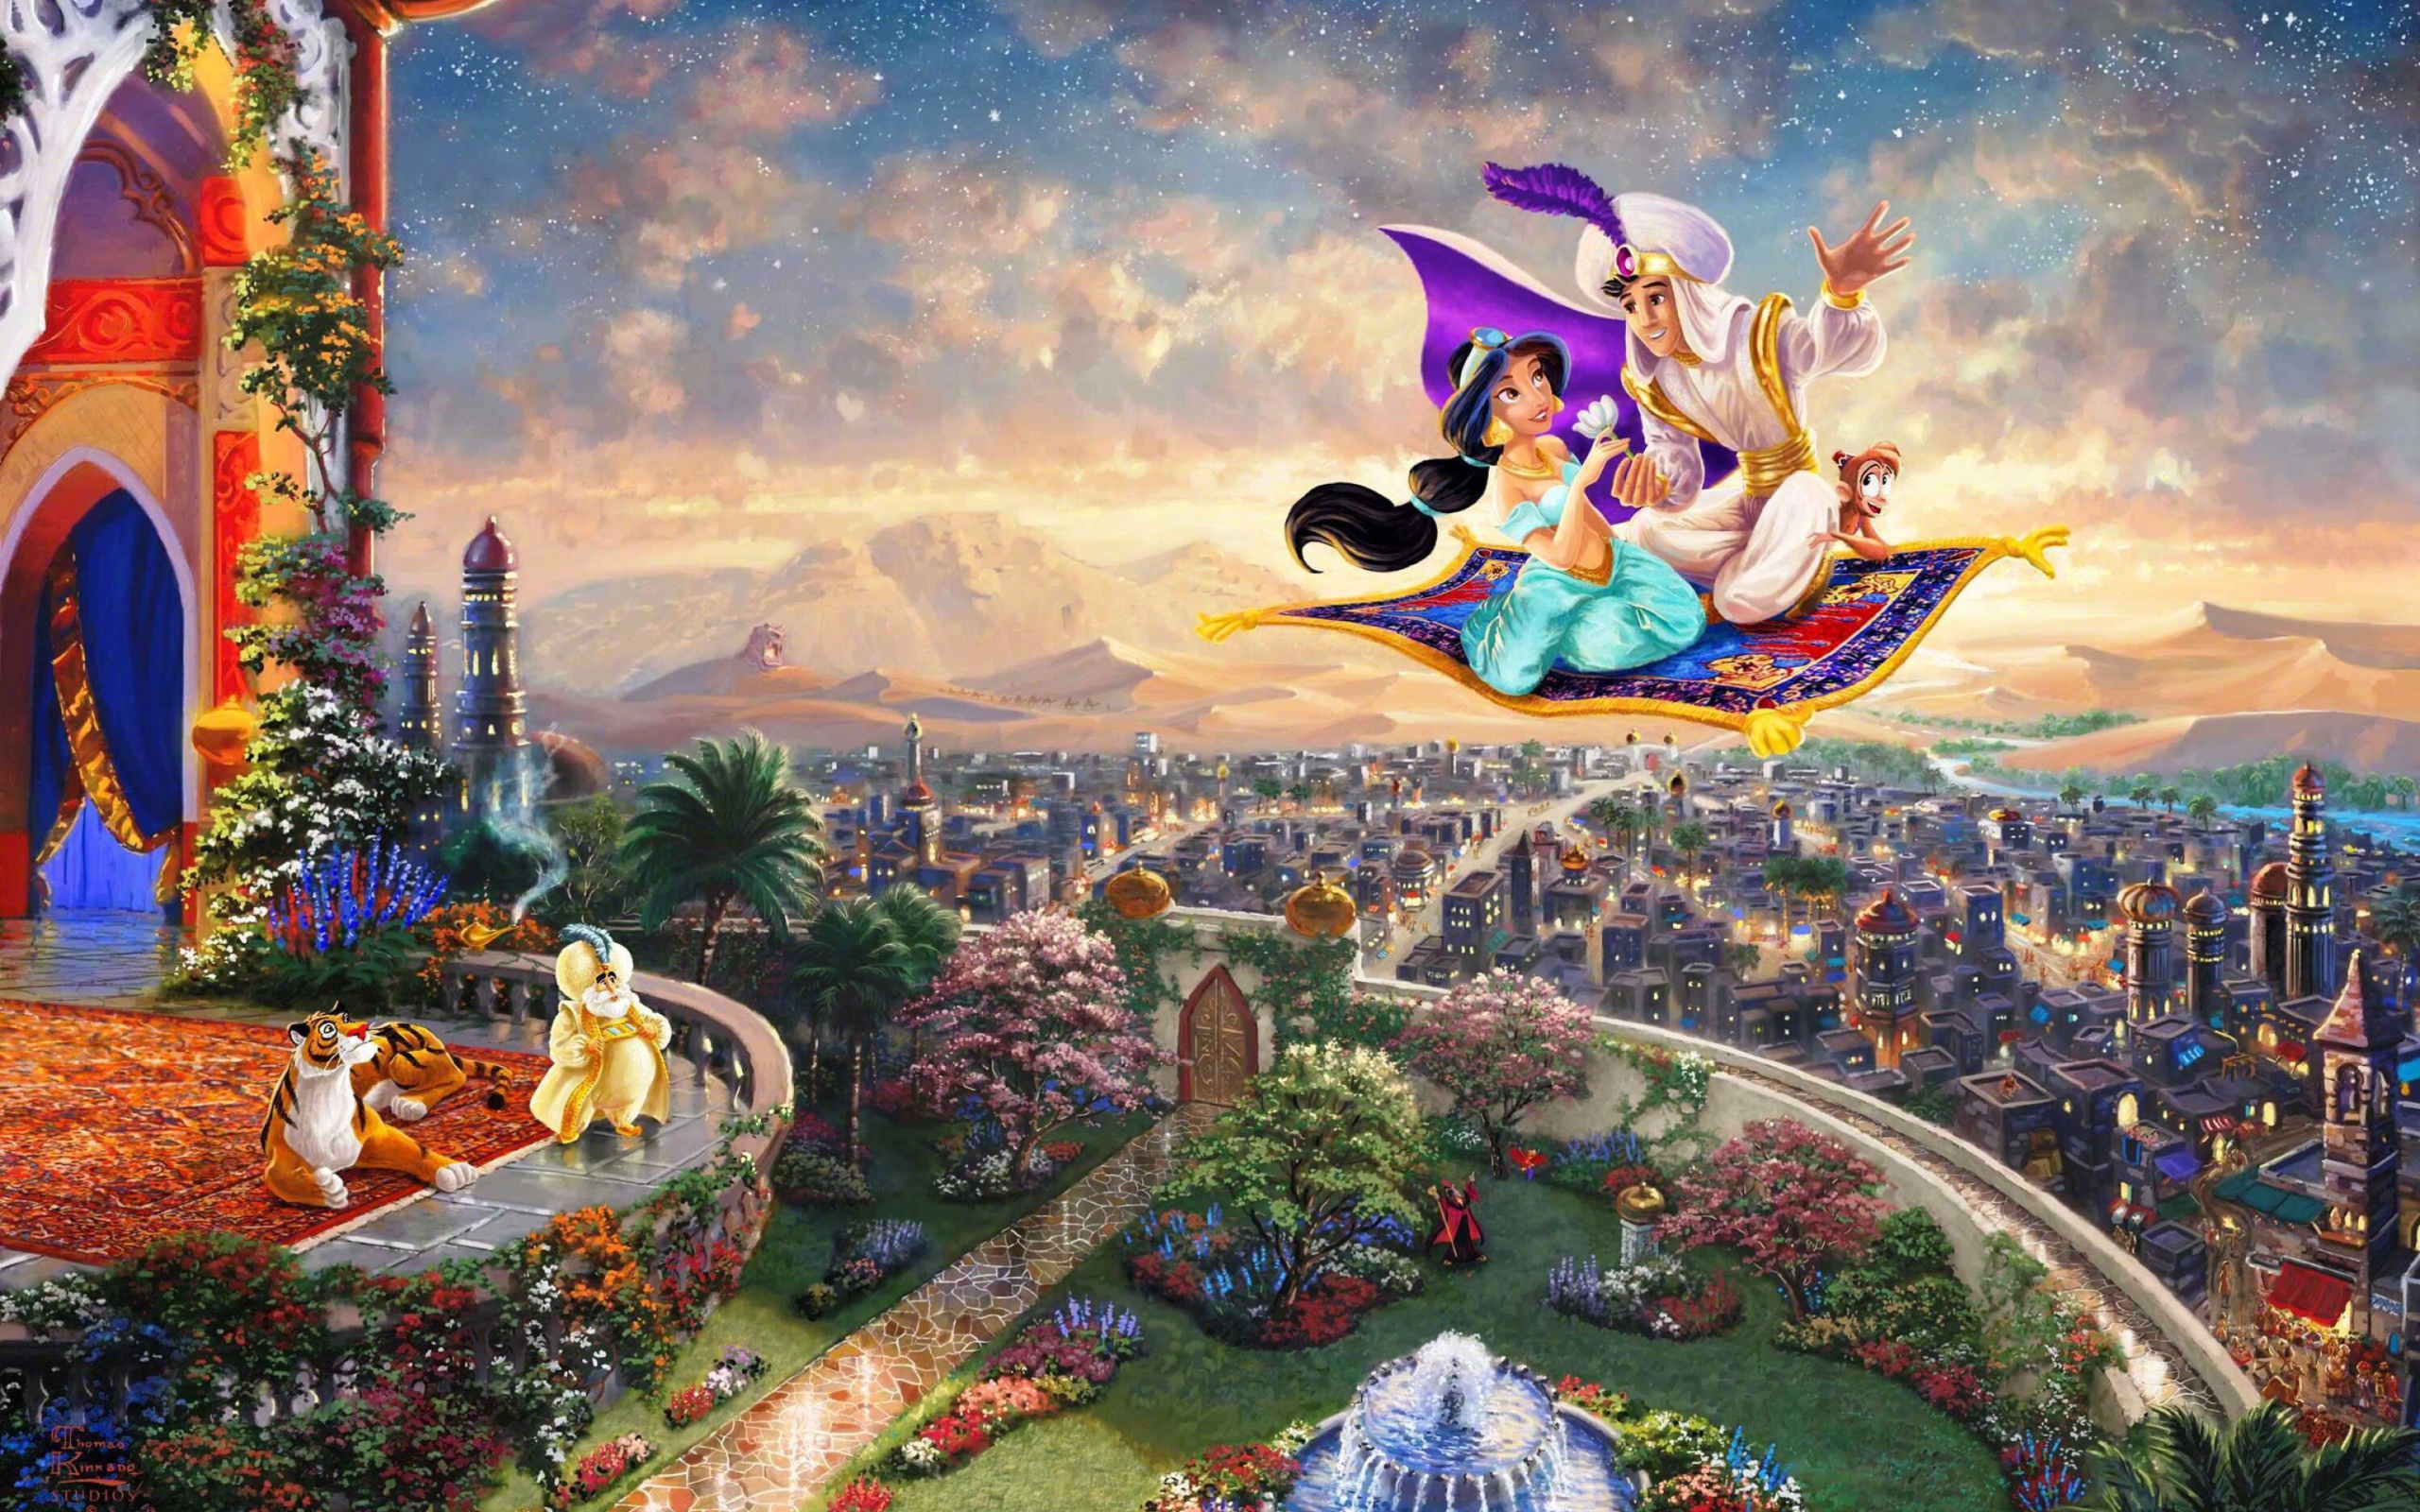 Aladdin wallpaper 2560x1600